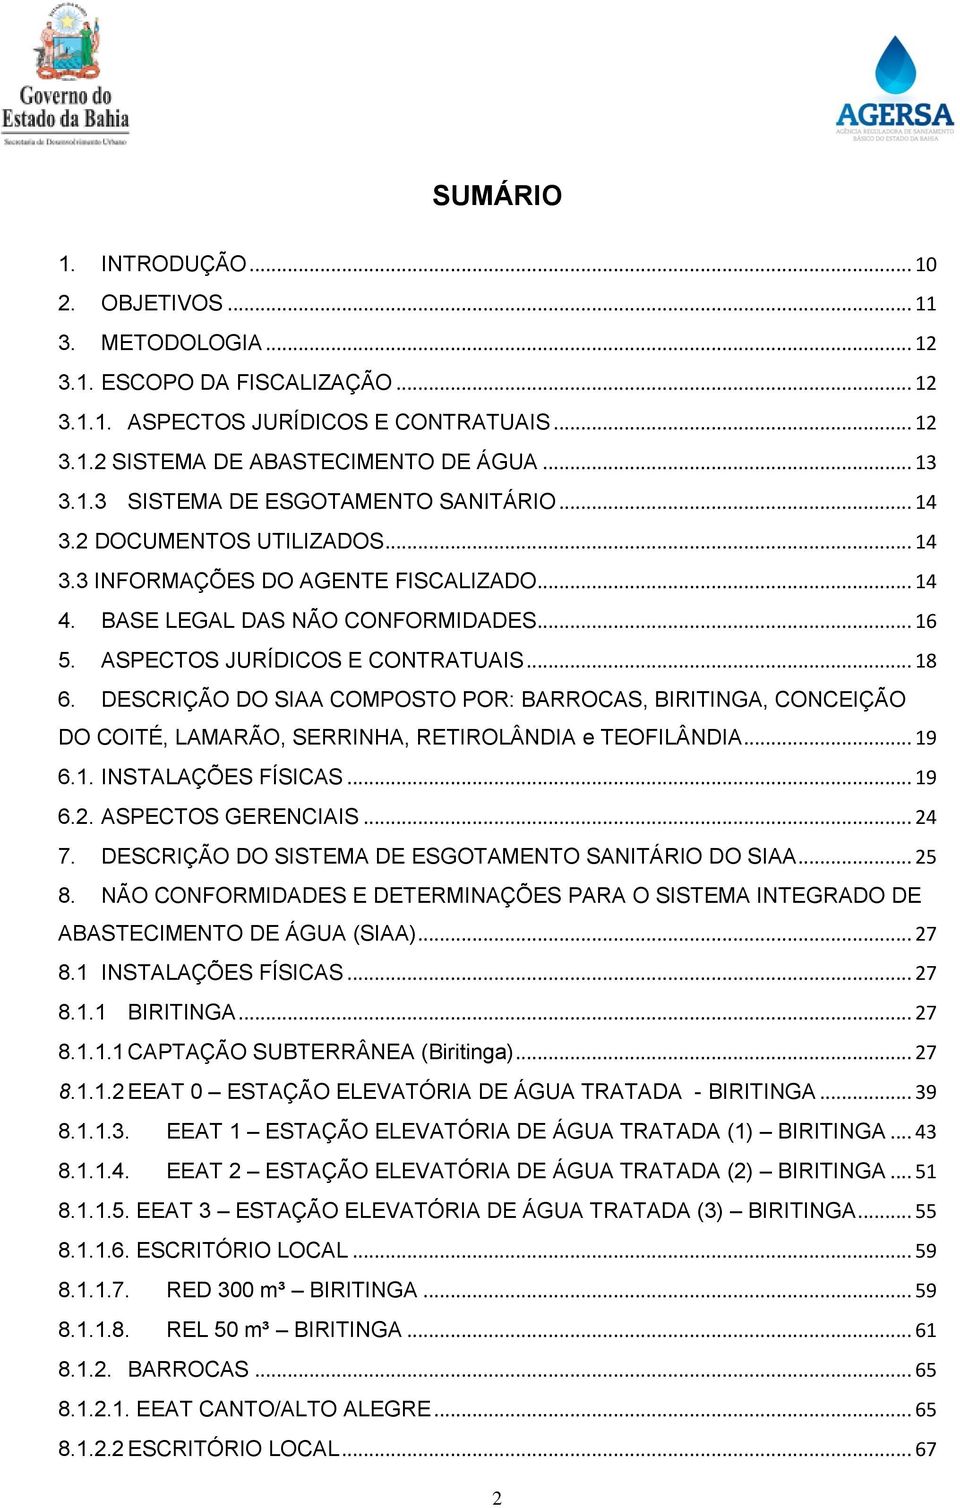 DESCRIÇÃO DO SIAA COMPOSTO POR: BARROCAS, BIRITINGA, CONCEIÇÃO DO COITÉ, LAMARÃO, SERRINHA, RETIROLÂNDIA e TEOFILÂNDIA... 19 6.1. INSTALAÇÕES FÍSICAS... 19 6.2. ASPECTOS GERENCIAIS... 24 7.